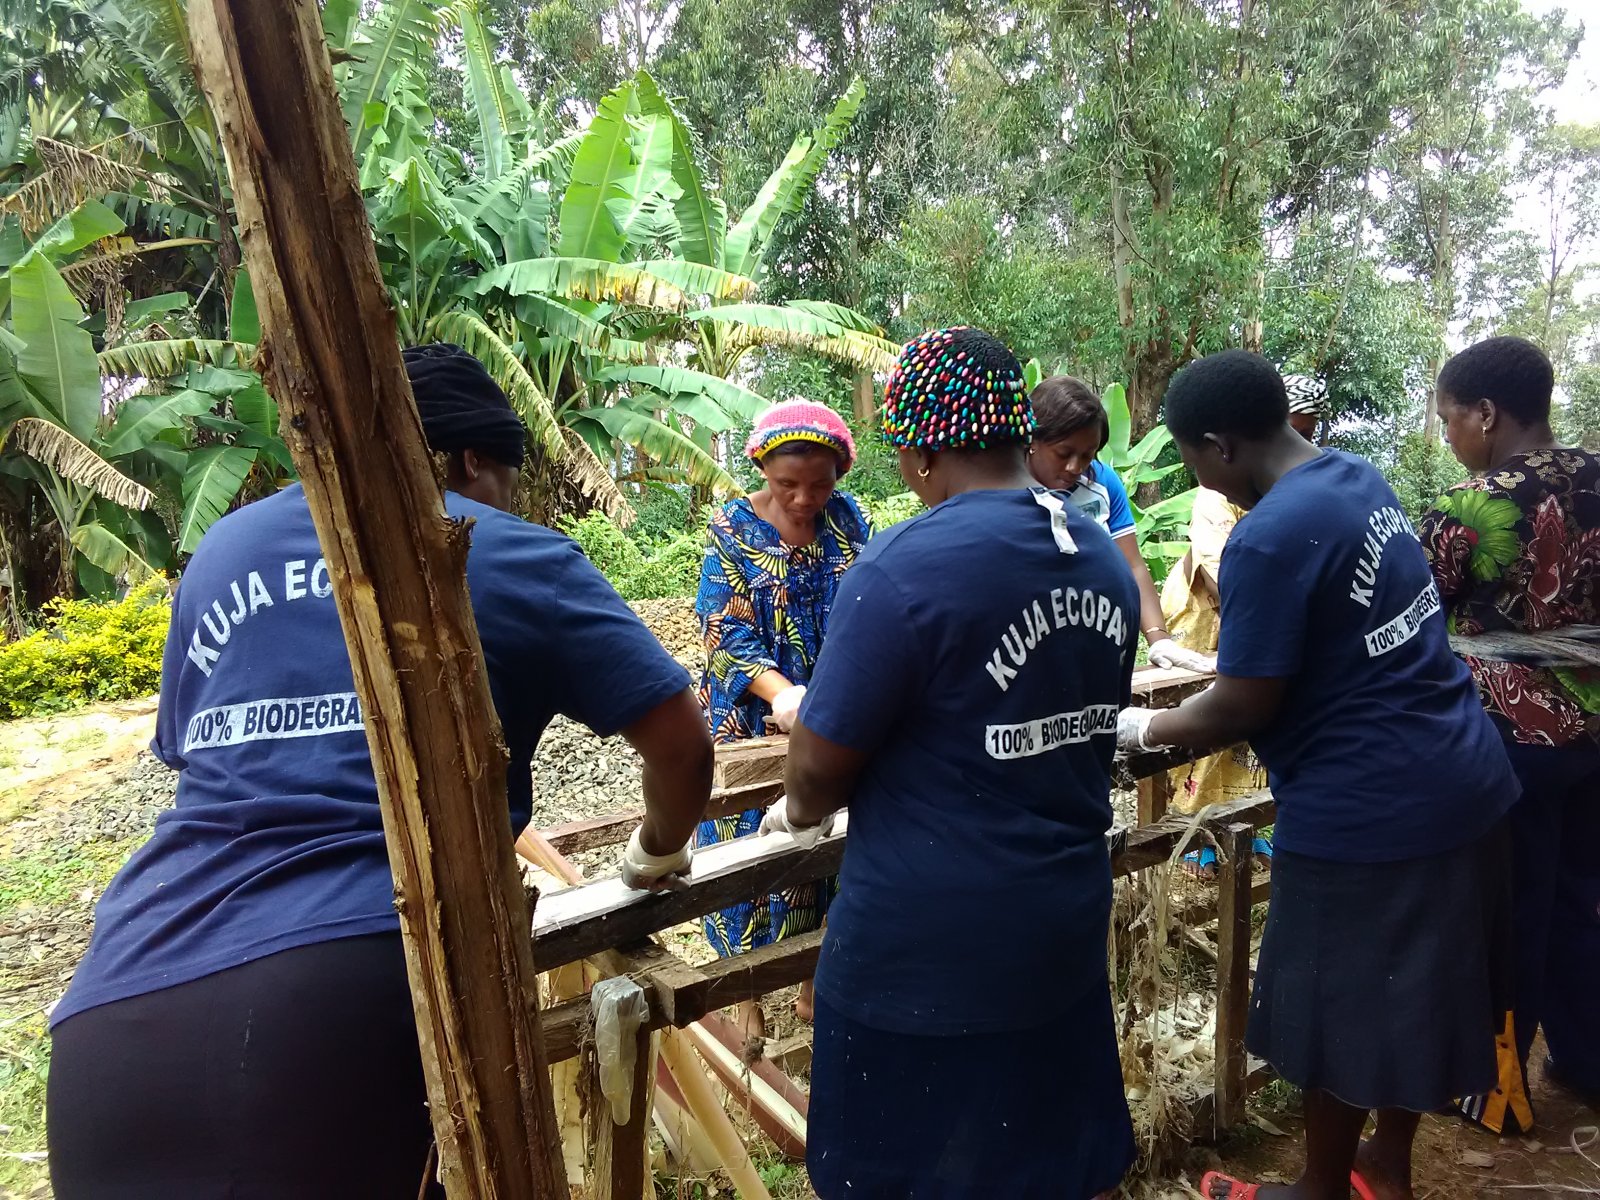 Kuja women extracting fibers from banana stems